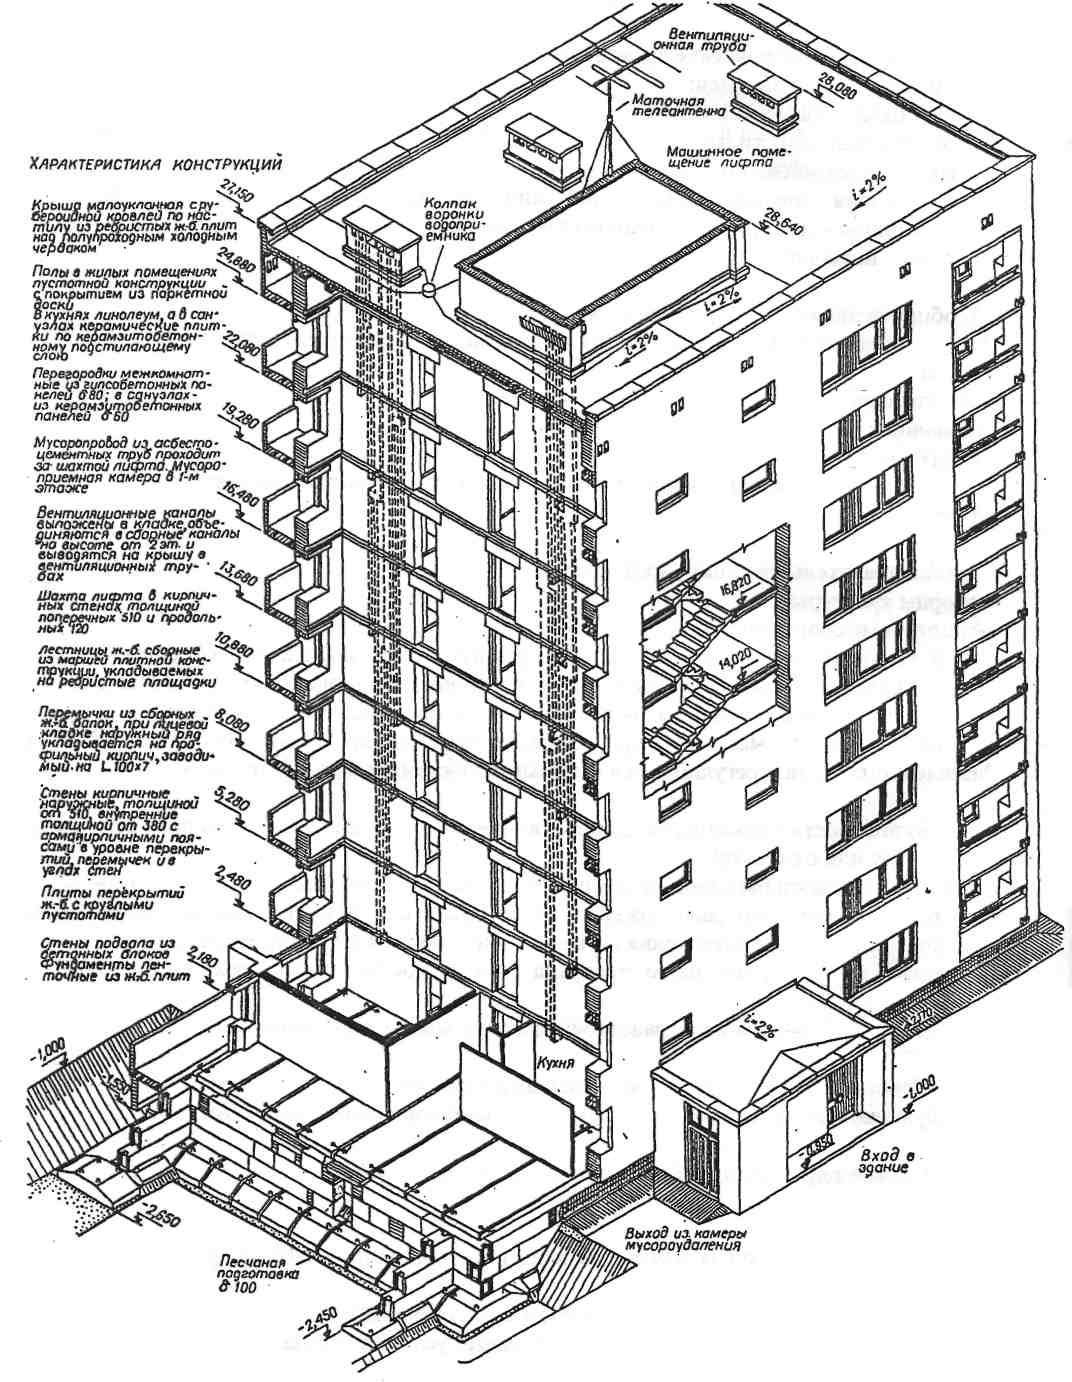 Этажность и количество этажей